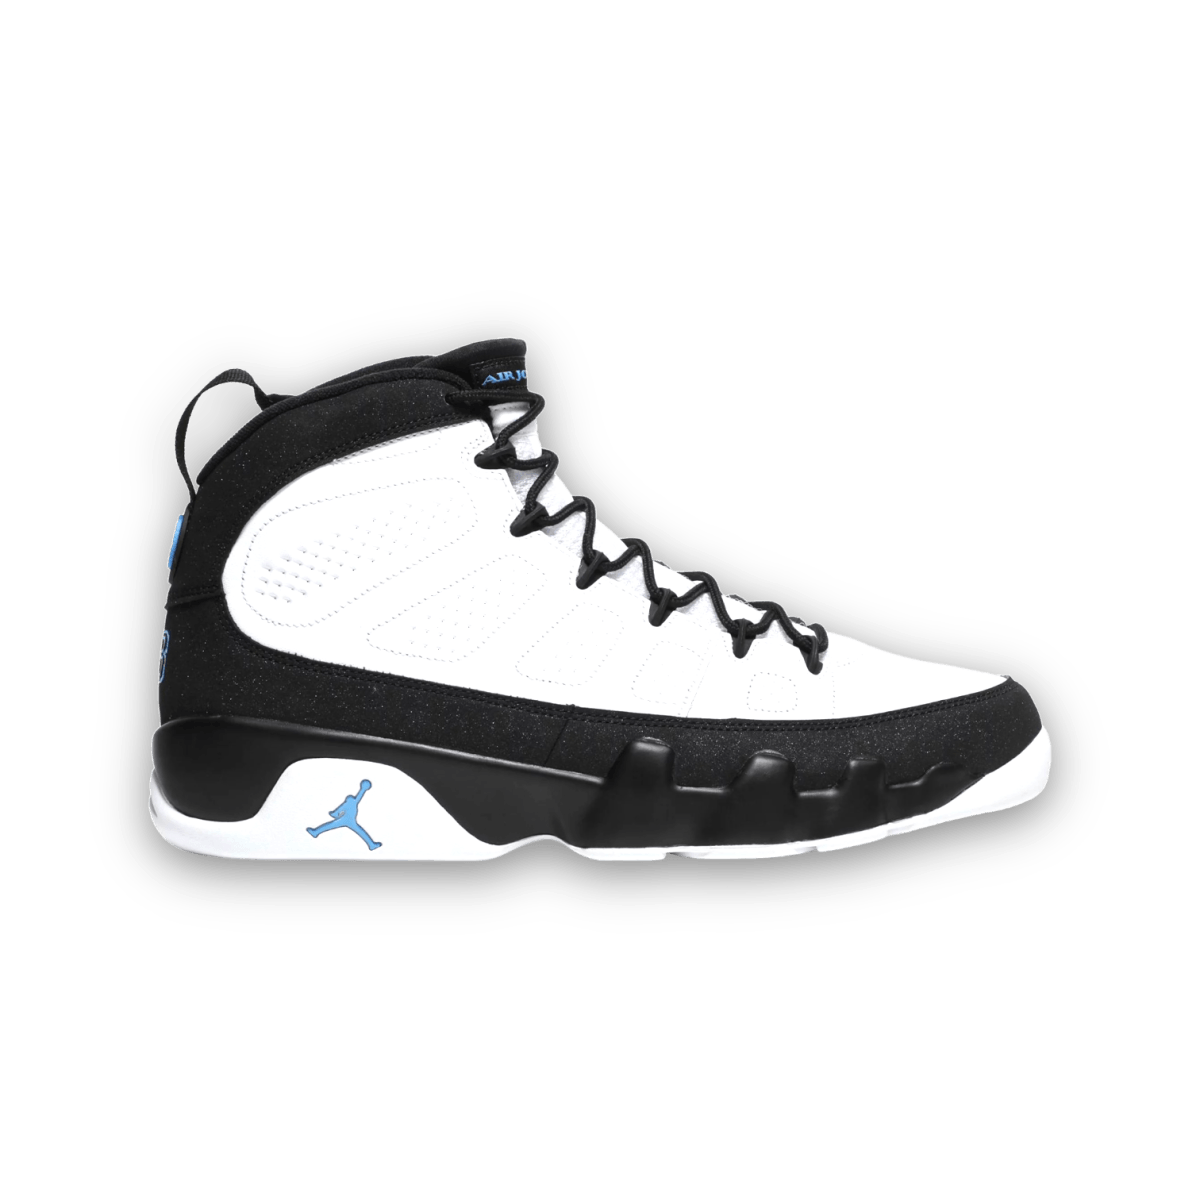 Jordan 9 Retro 'University Blue' - High Sneaker - Jawns on Fire Sneakers & Streetwear